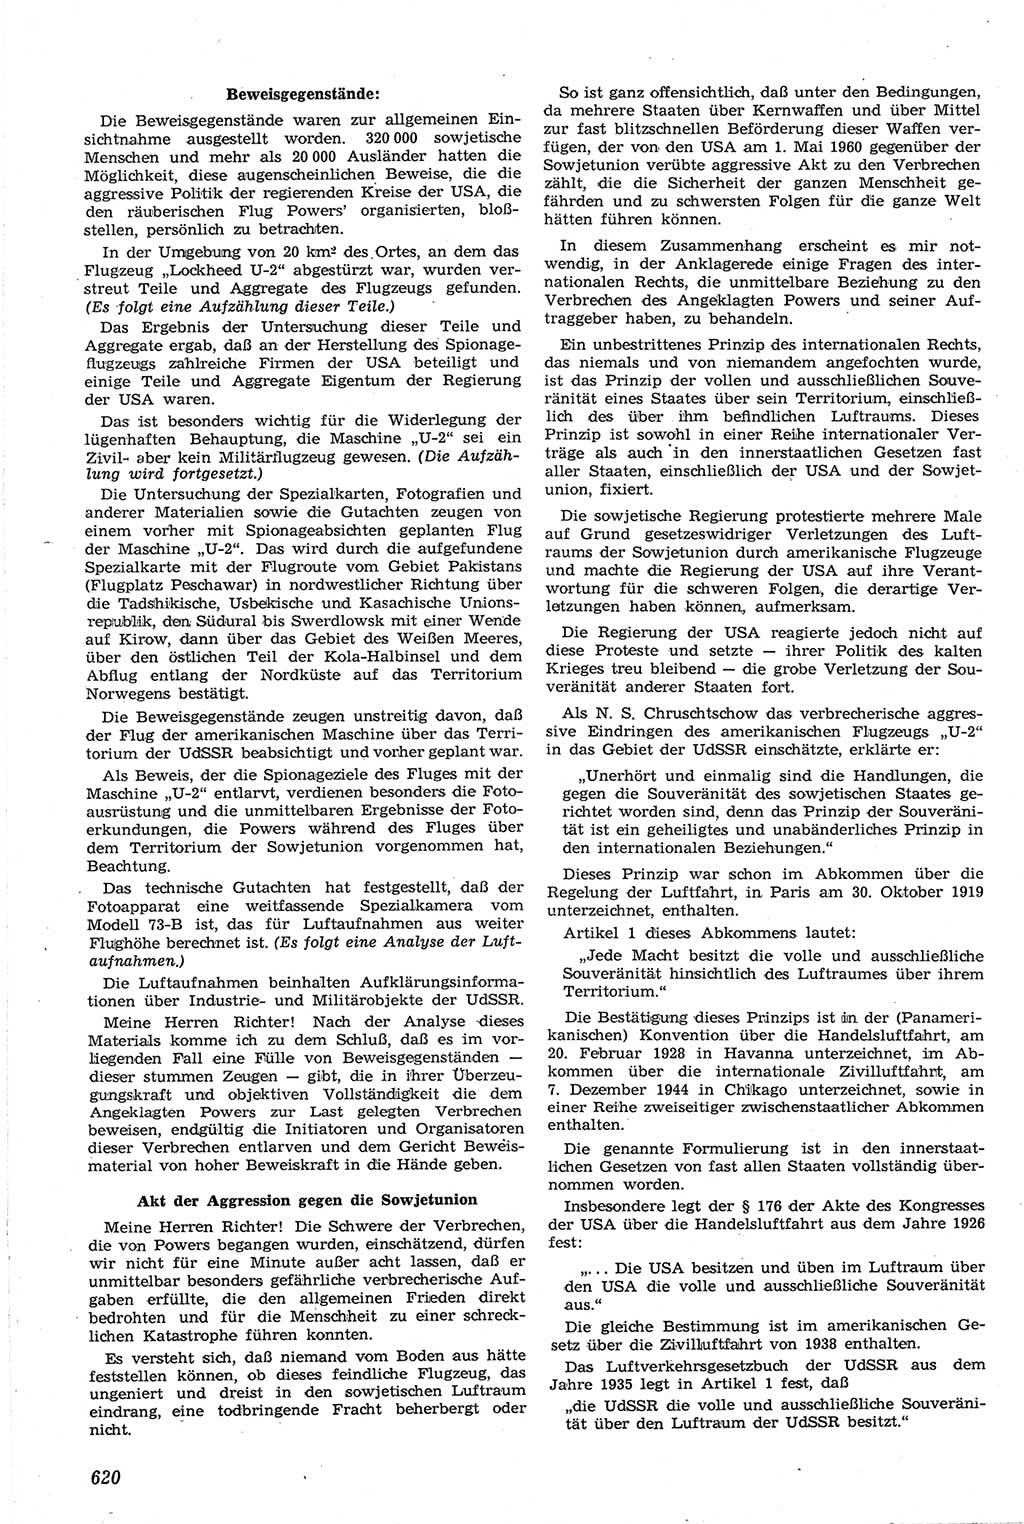 Neue Justiz (NJ), Zeitschrift für Recht und Rechtswissenschaft [Deutsche Demokratische Republik (DDR)], 14. Jahrgang 1960, Seite 620 (NJ DDR 1960, S. 620)